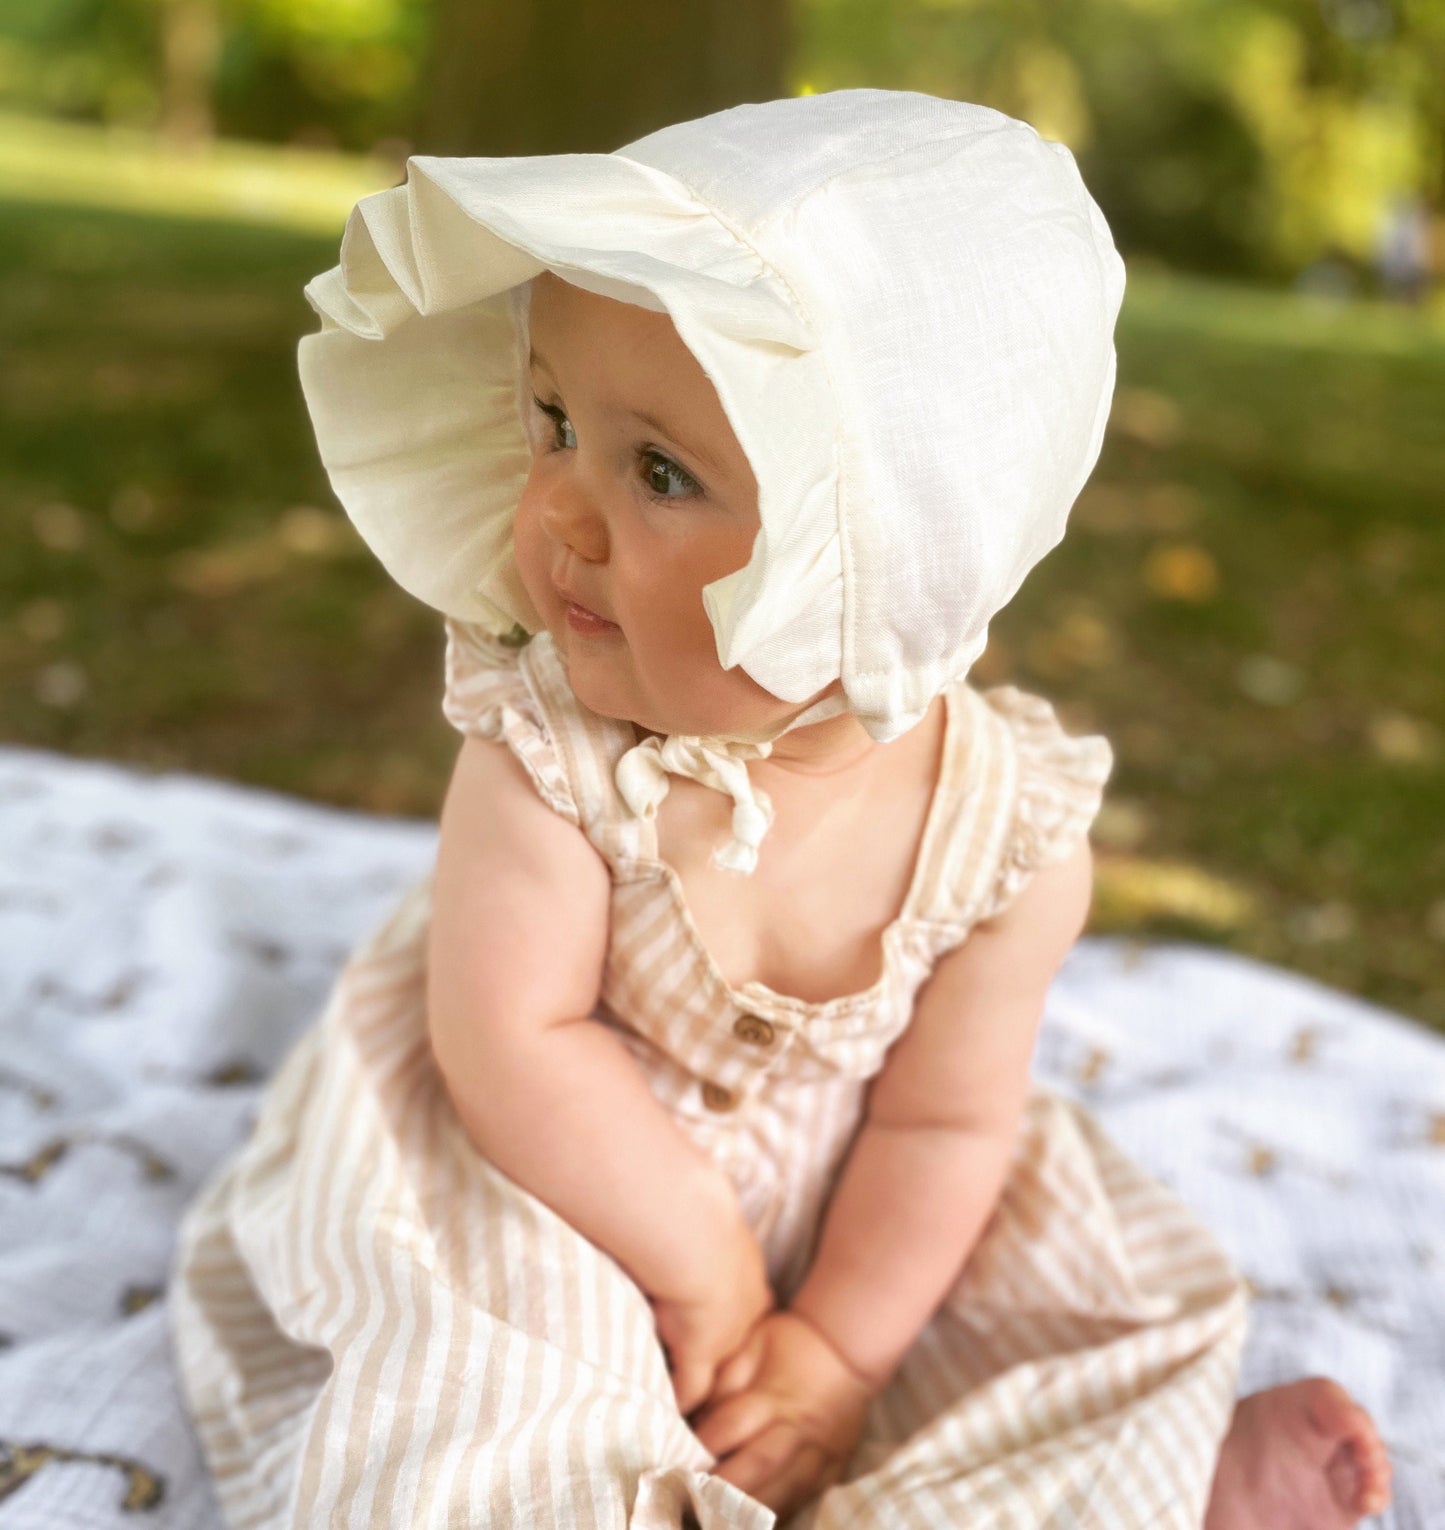 Liberty London Floral Baby Bonnet, Baby Girl Dress Bonnet, Baby Kids Sunhat, Victorian Bonnet, Summer Spring Bonnet, Silky Cotton Bonnet